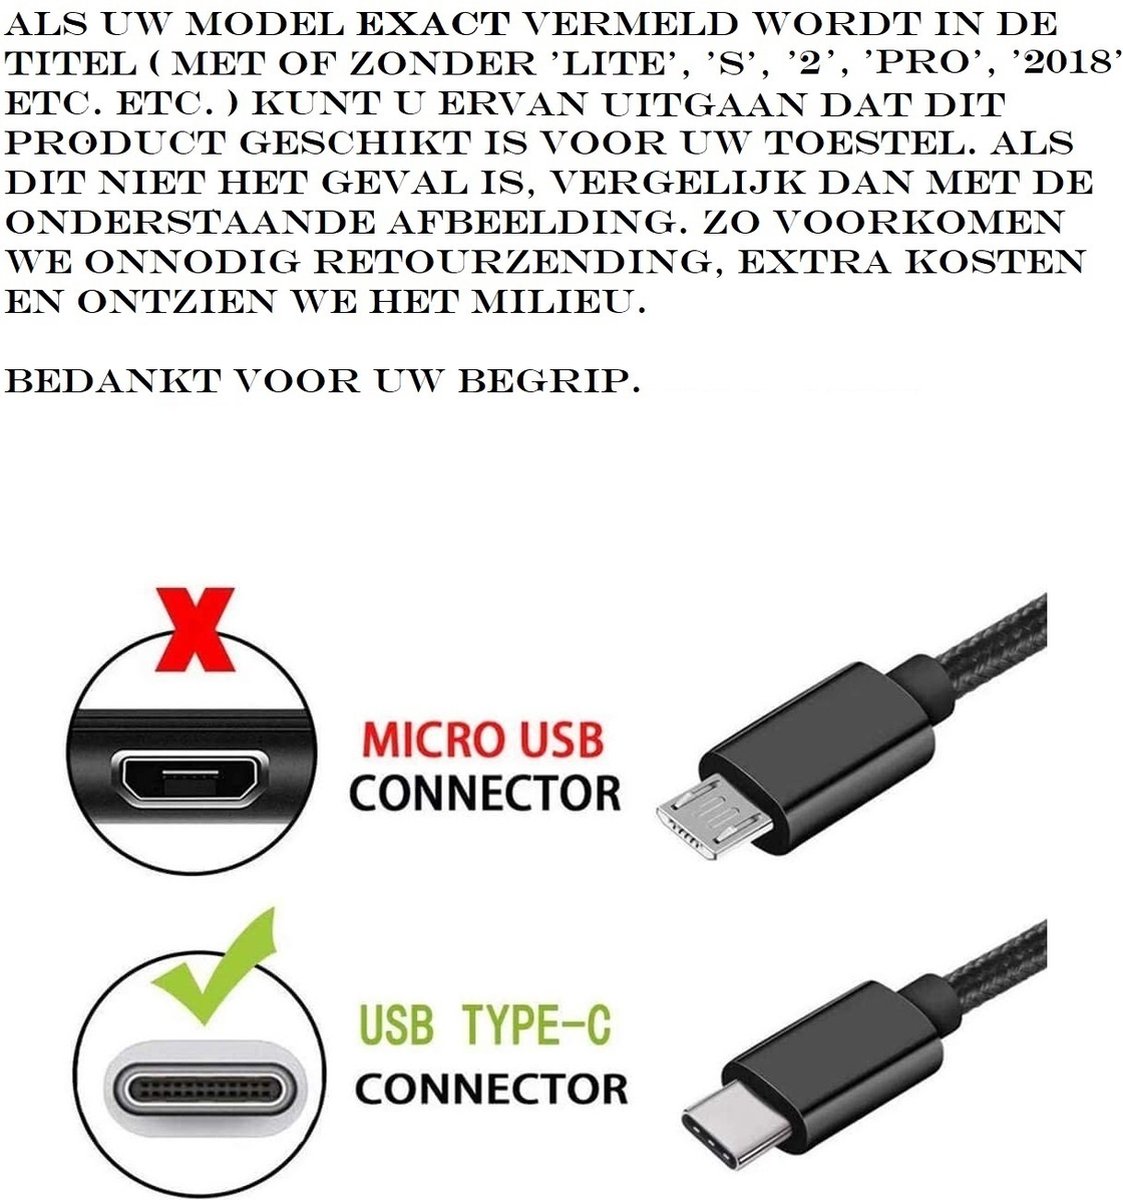 StarTech.com Câble de Charge USB C de 2m - Cordon USB-C, 60W PD 3A - Câble  USB C Coudé Noir - Fibre Aramide Robuste - Câble USB 2.0 Type C - Chargeur